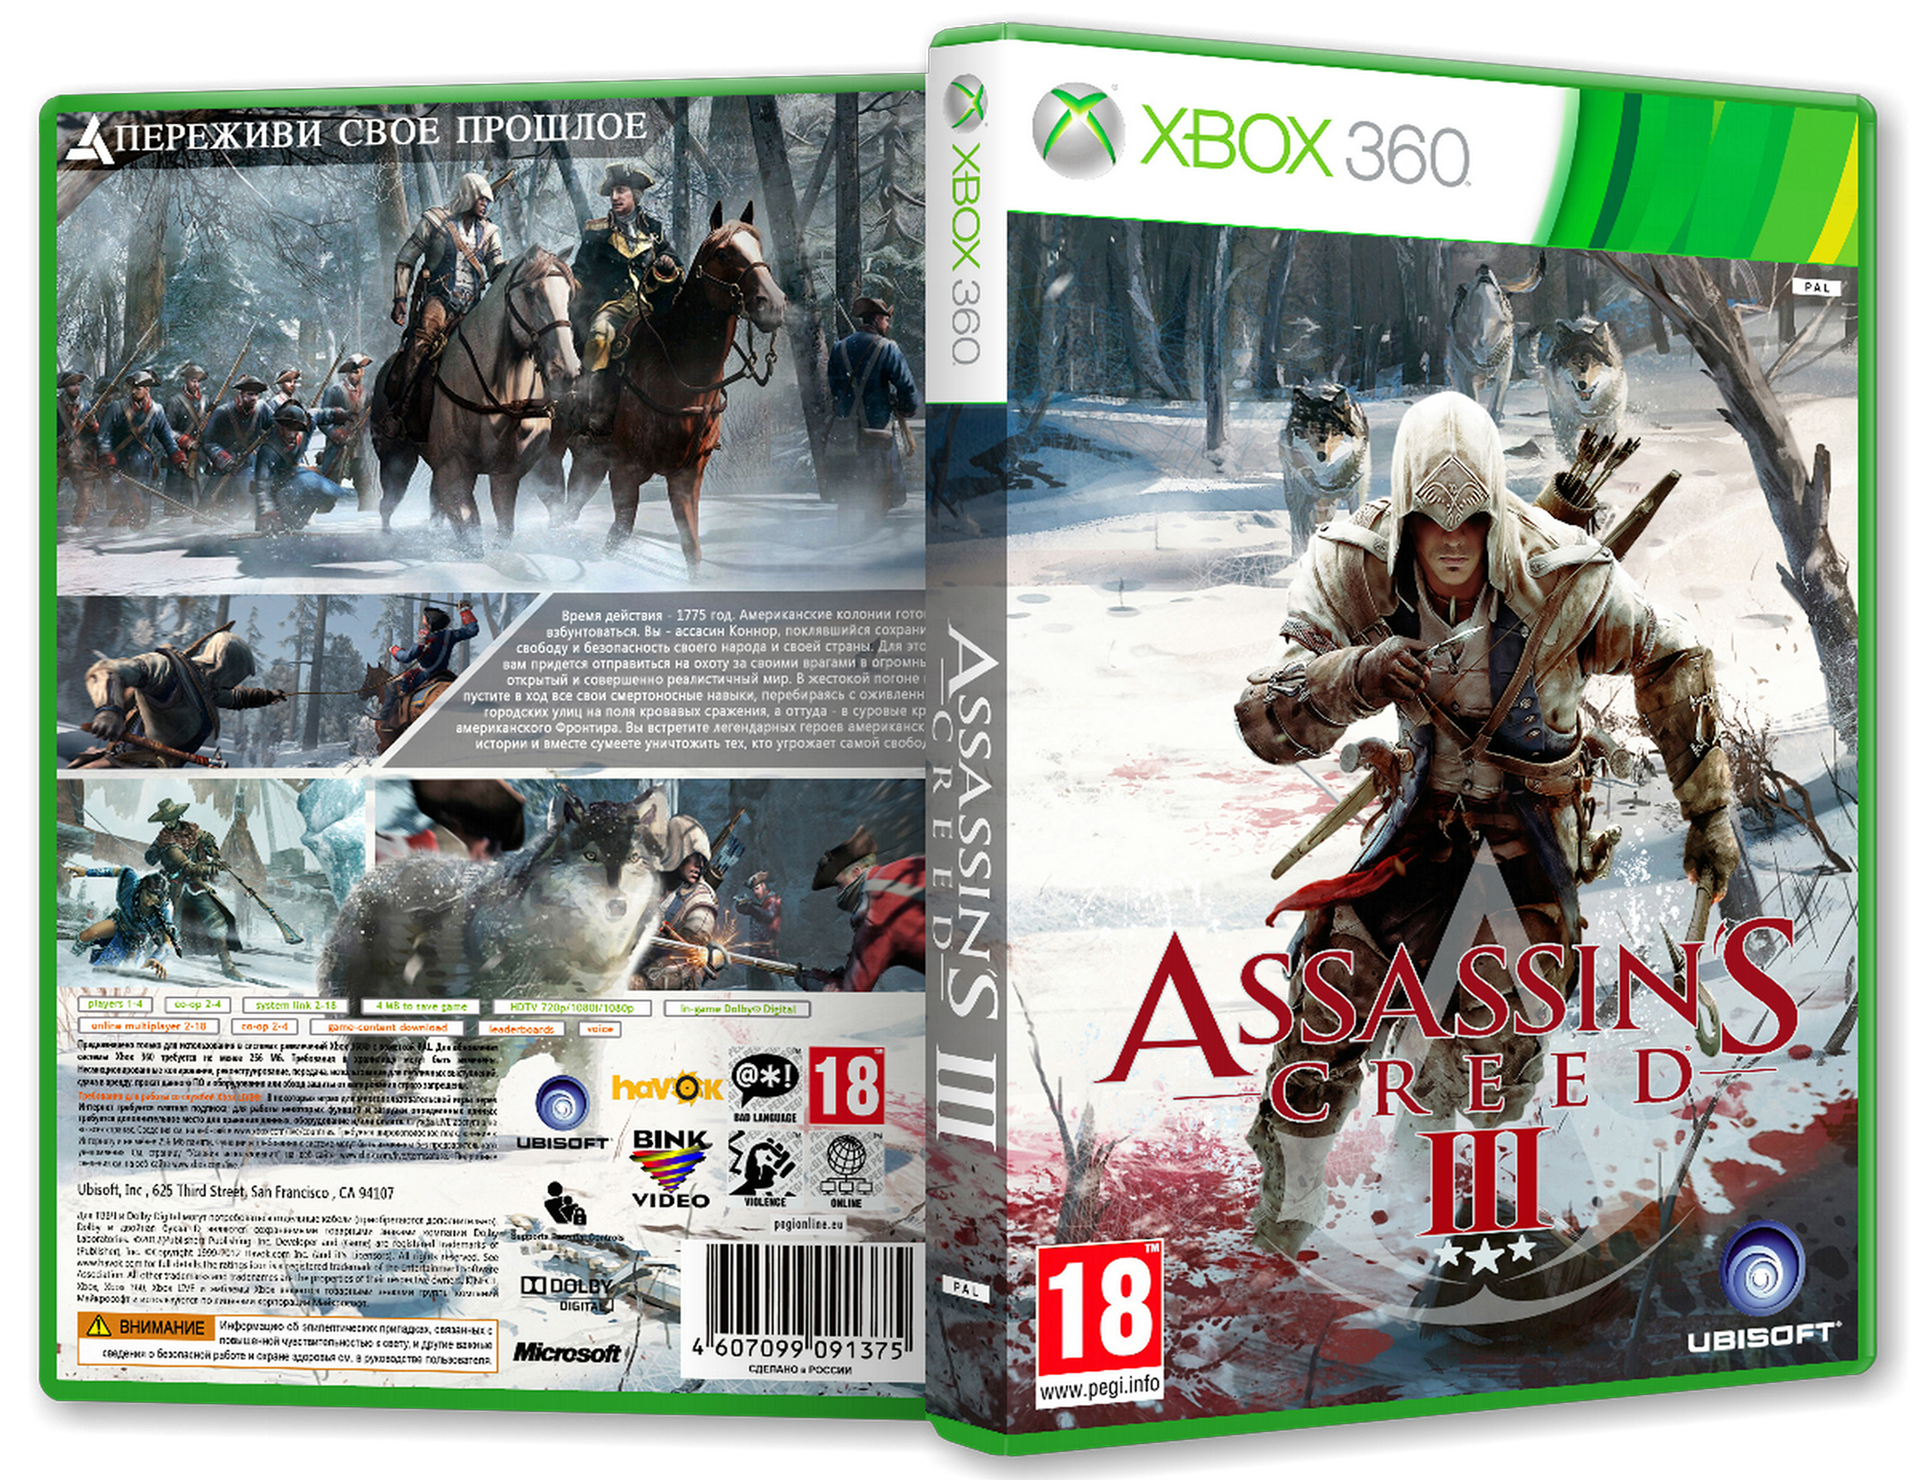 Ассасин Крид 3 Xbox 360. Assassins Creed 3 [Xbox 360]. Ассасин Крид 3 на хбокс 360. Assassins Creed 3 диск для Xbox 360. Ассасин хбокс